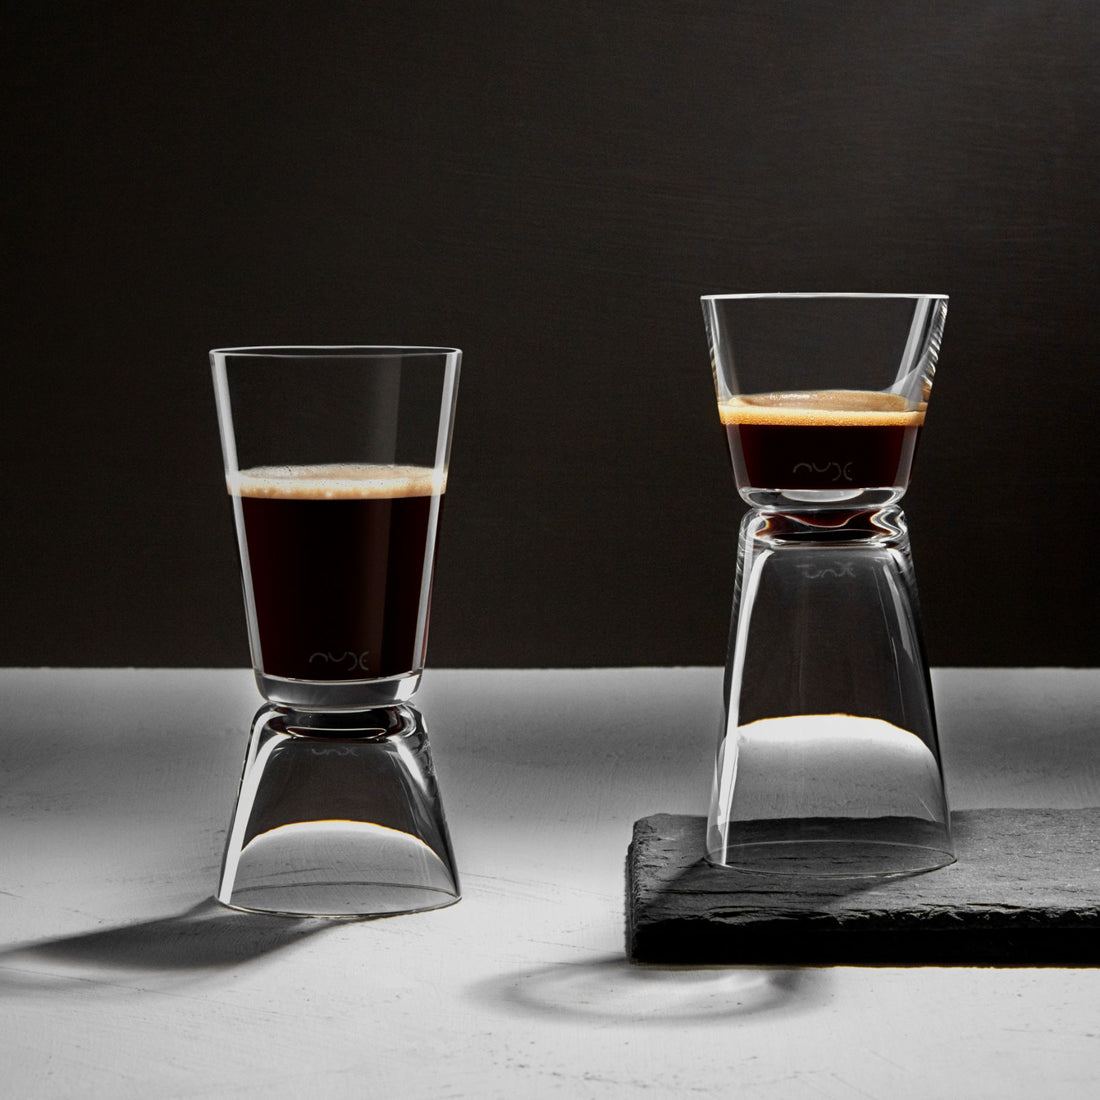 Set of 2 Espresso Shot Glasses - espresso glass